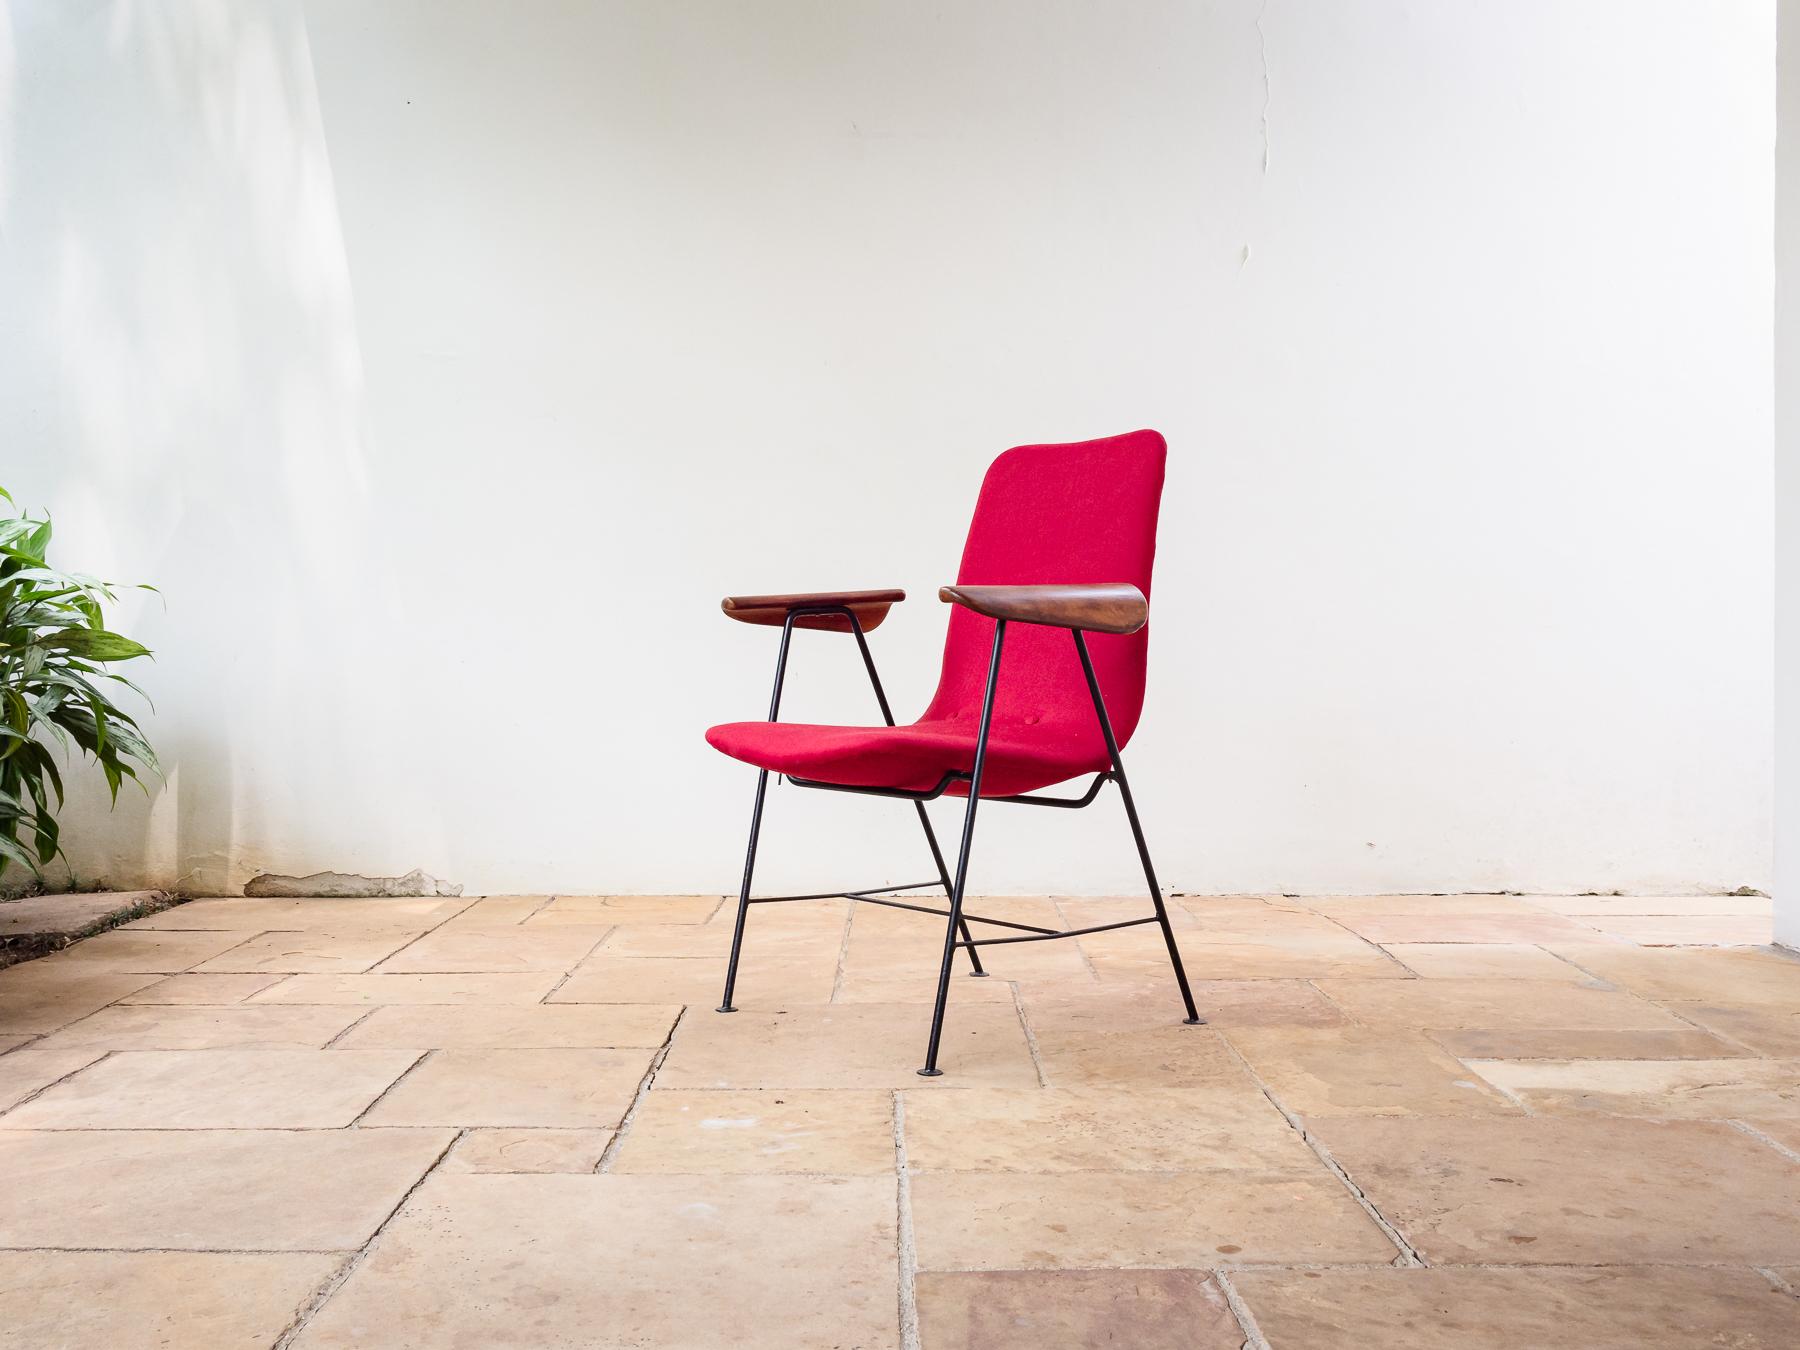 Brasilianischer Sessel der Jahrhundertmitte aus Eisen und Caviúna-Hartholz, entworfen von Carlo Hauner für Móveis Artesanal, um 1952.
Dieser leichte Sessel hat schöne skulpturale Armlehnen in einer sehr aerodynamischen Form, geschnitzt aus massivem